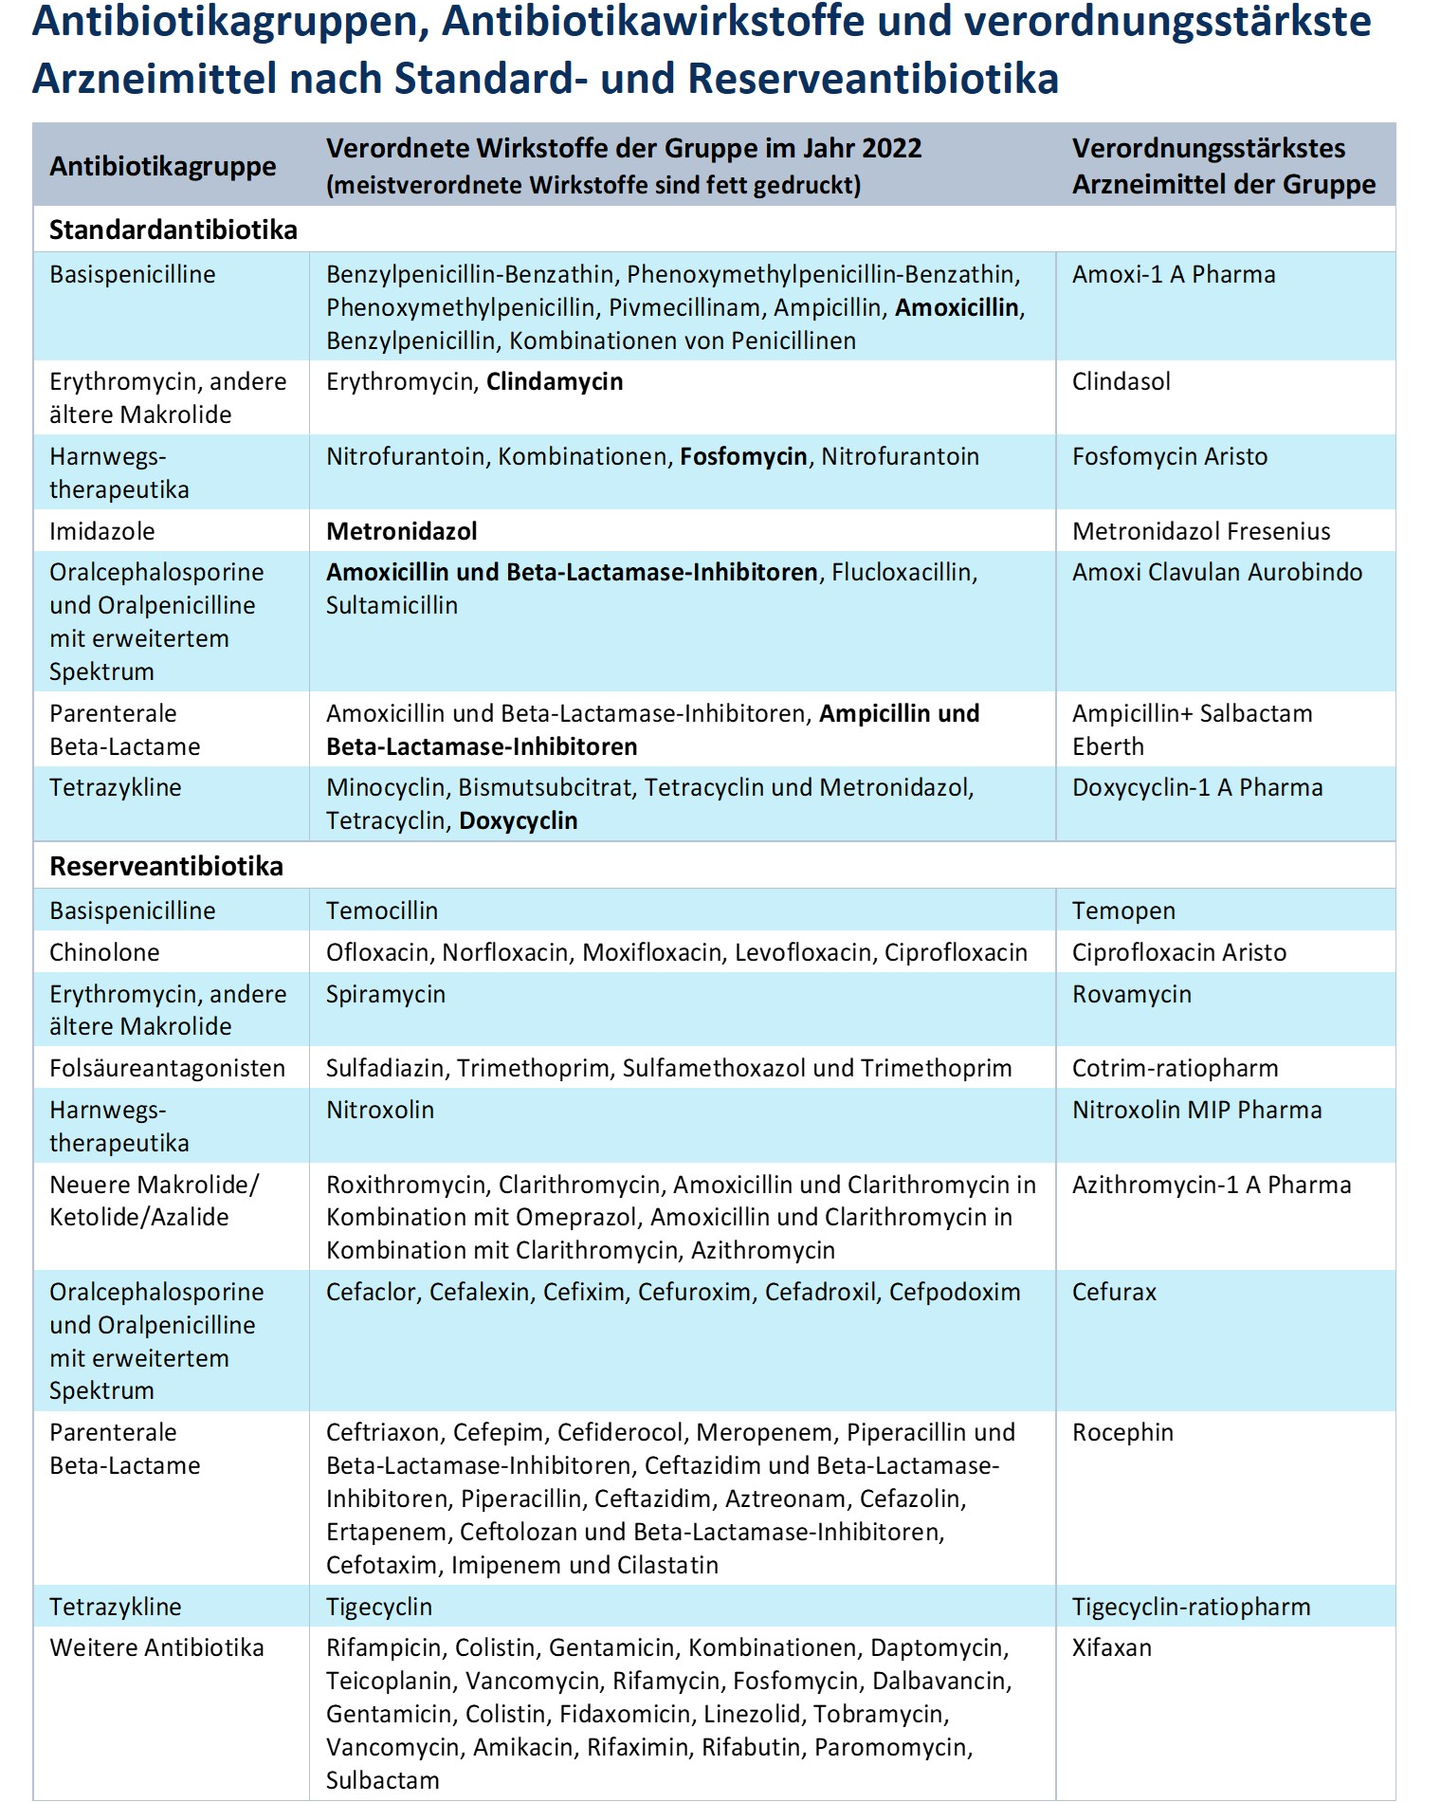 Dreispaltige Tabelle mit Antibiotikagruppen, Antibiotikawirkstoffen und verordnungsstärkste Arzneimittel nach Standard- und Reserveantibiotika